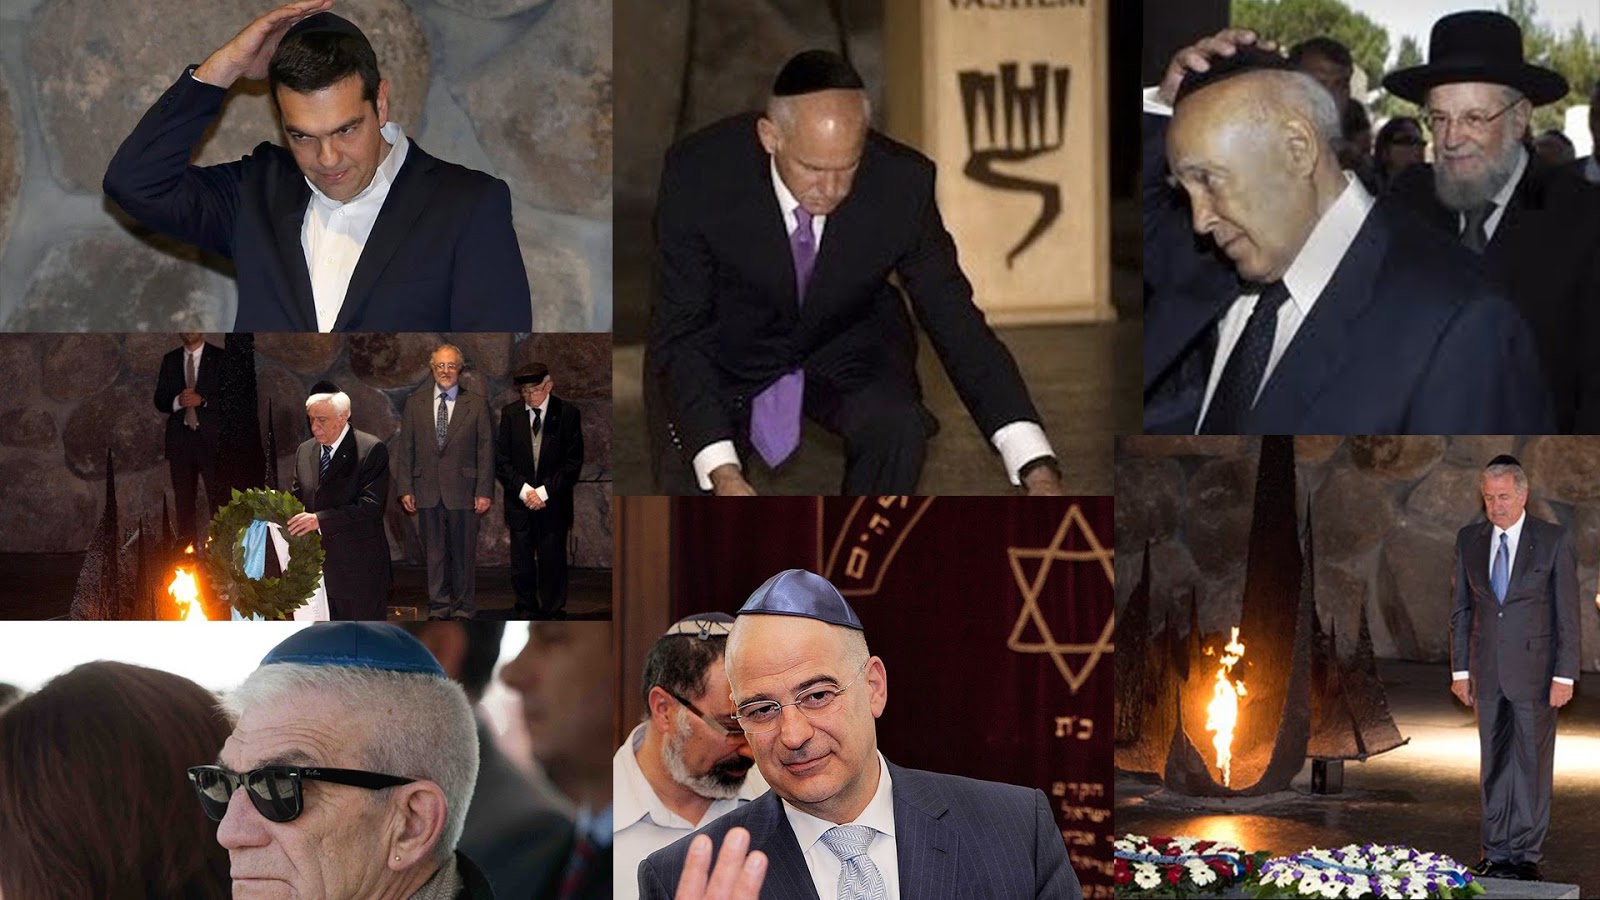 Εβραίοι στο Ελληνικό Κοινοβούλιο….ΣΩΩΩΩΩΩΩΩΩΩΠΑ!!! HÜRRIYET – Ο ΤΣΙΠΡΑΣ ΕΙΝΑΙ ΕΒΡΑΙΟΣ. ΈΤΣΙ εξηγούνται ΟΛΑ…